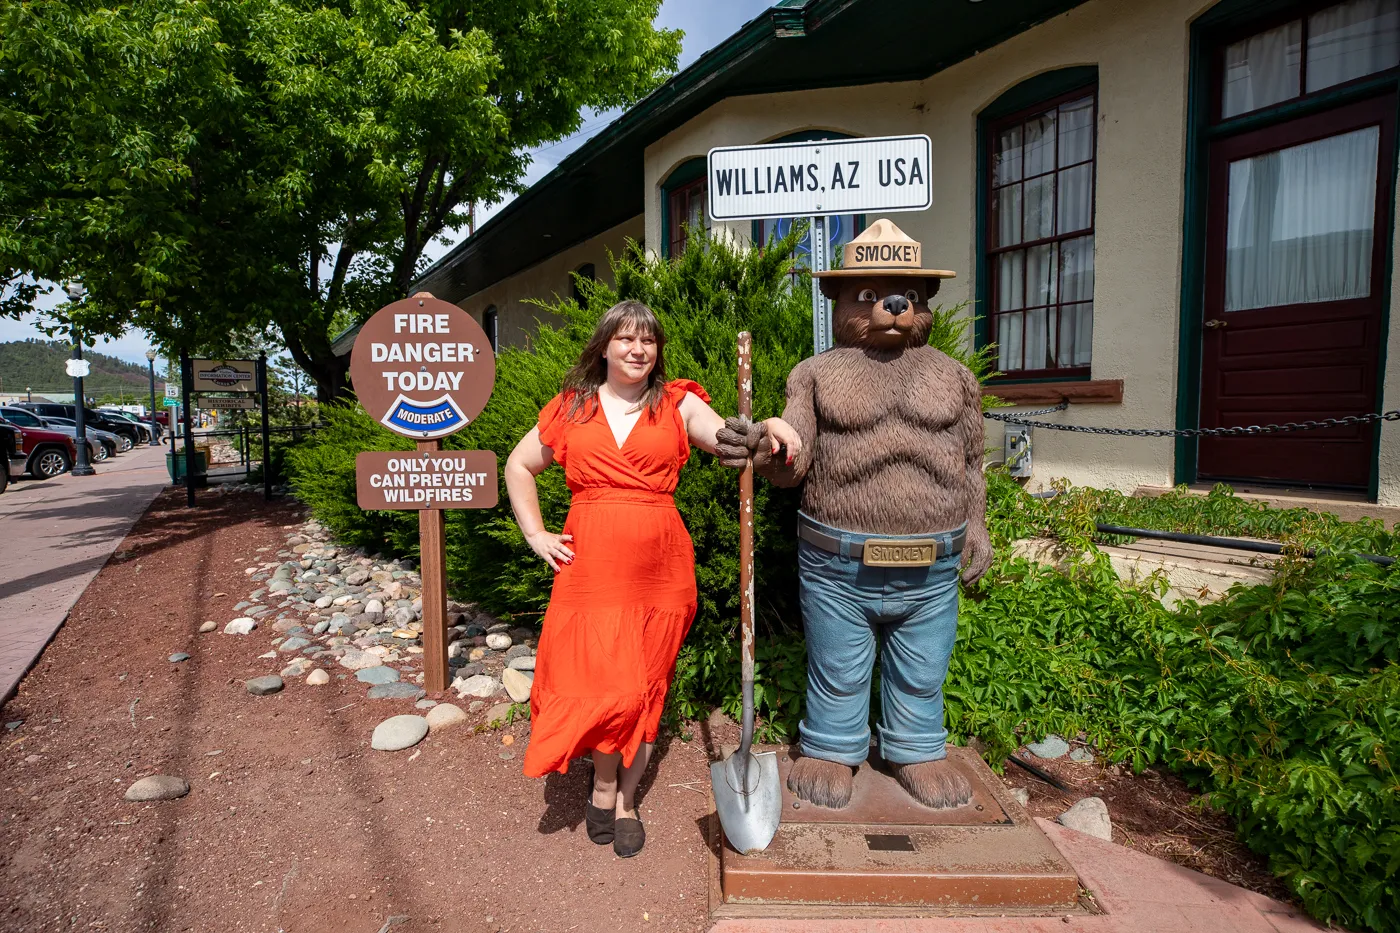 Williams Visitor Center in Williams, Arizona Route 66